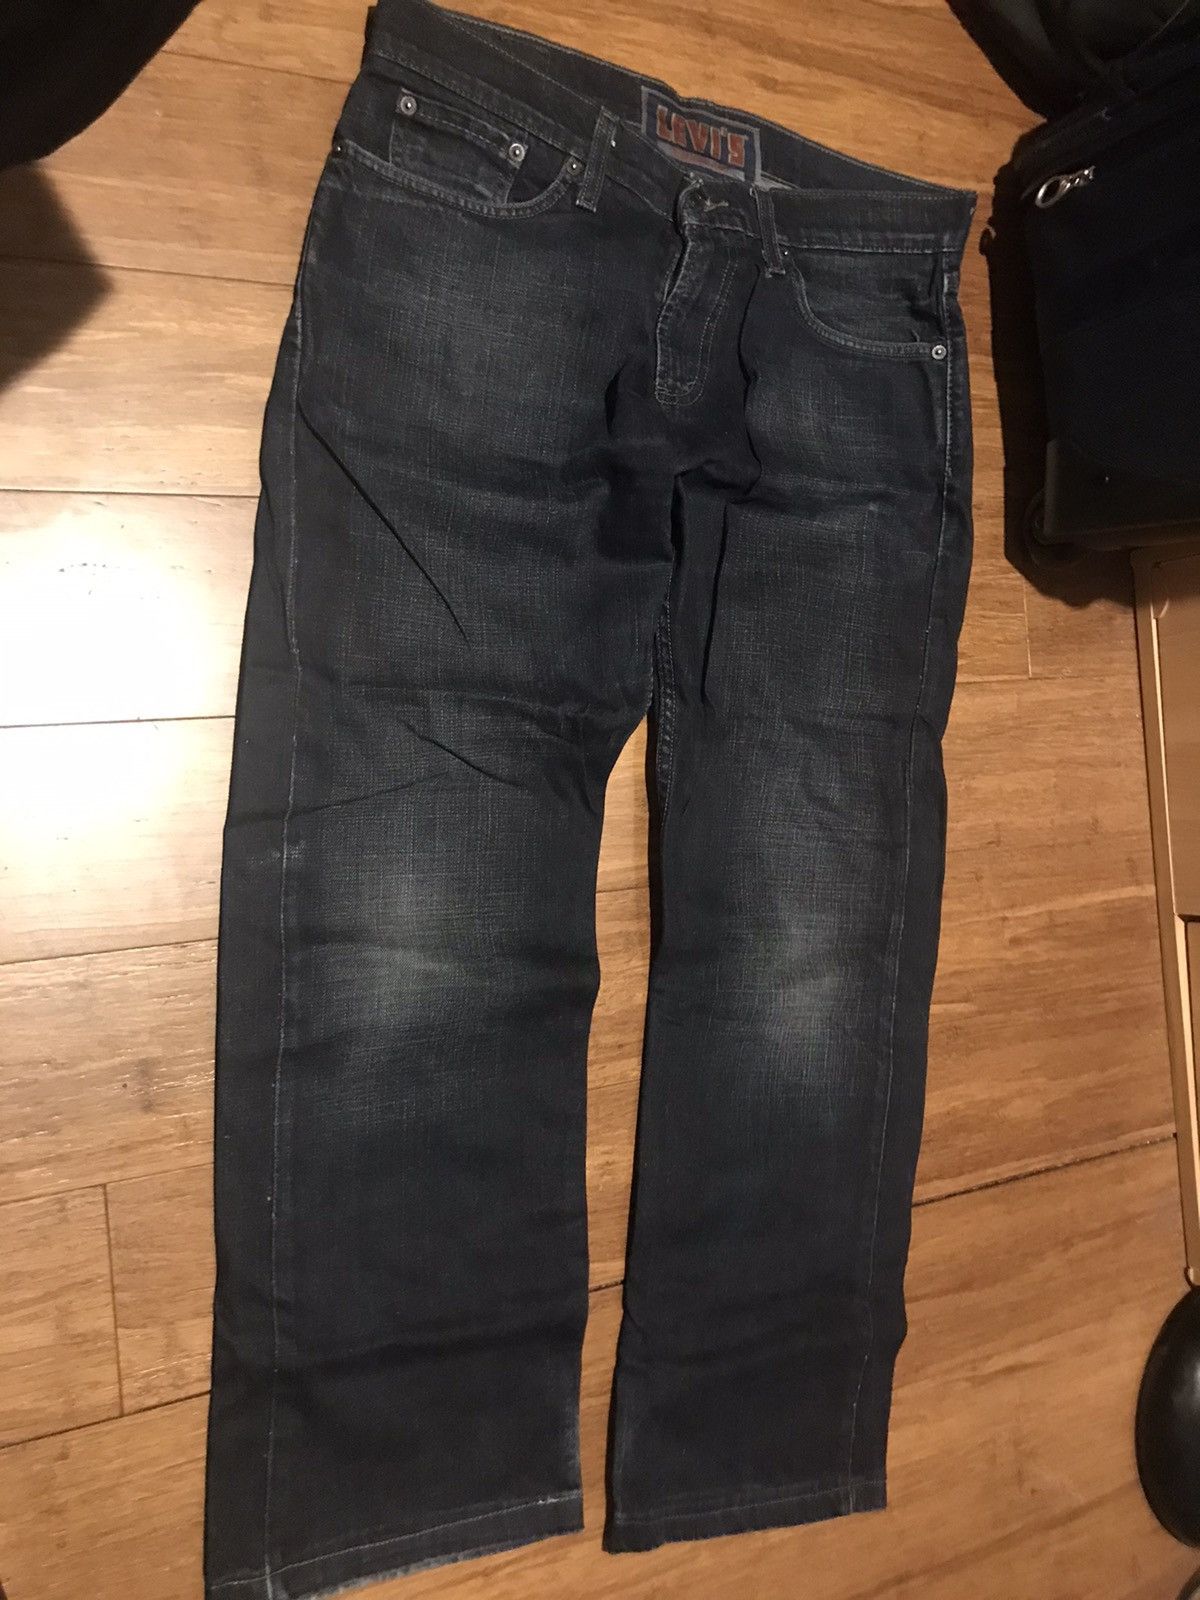 Levi's Vintage Clothing Levi’s Jeans 514 Slim Straight Fit - Size 32 Size US 32 / EU 48 - 2 Preview